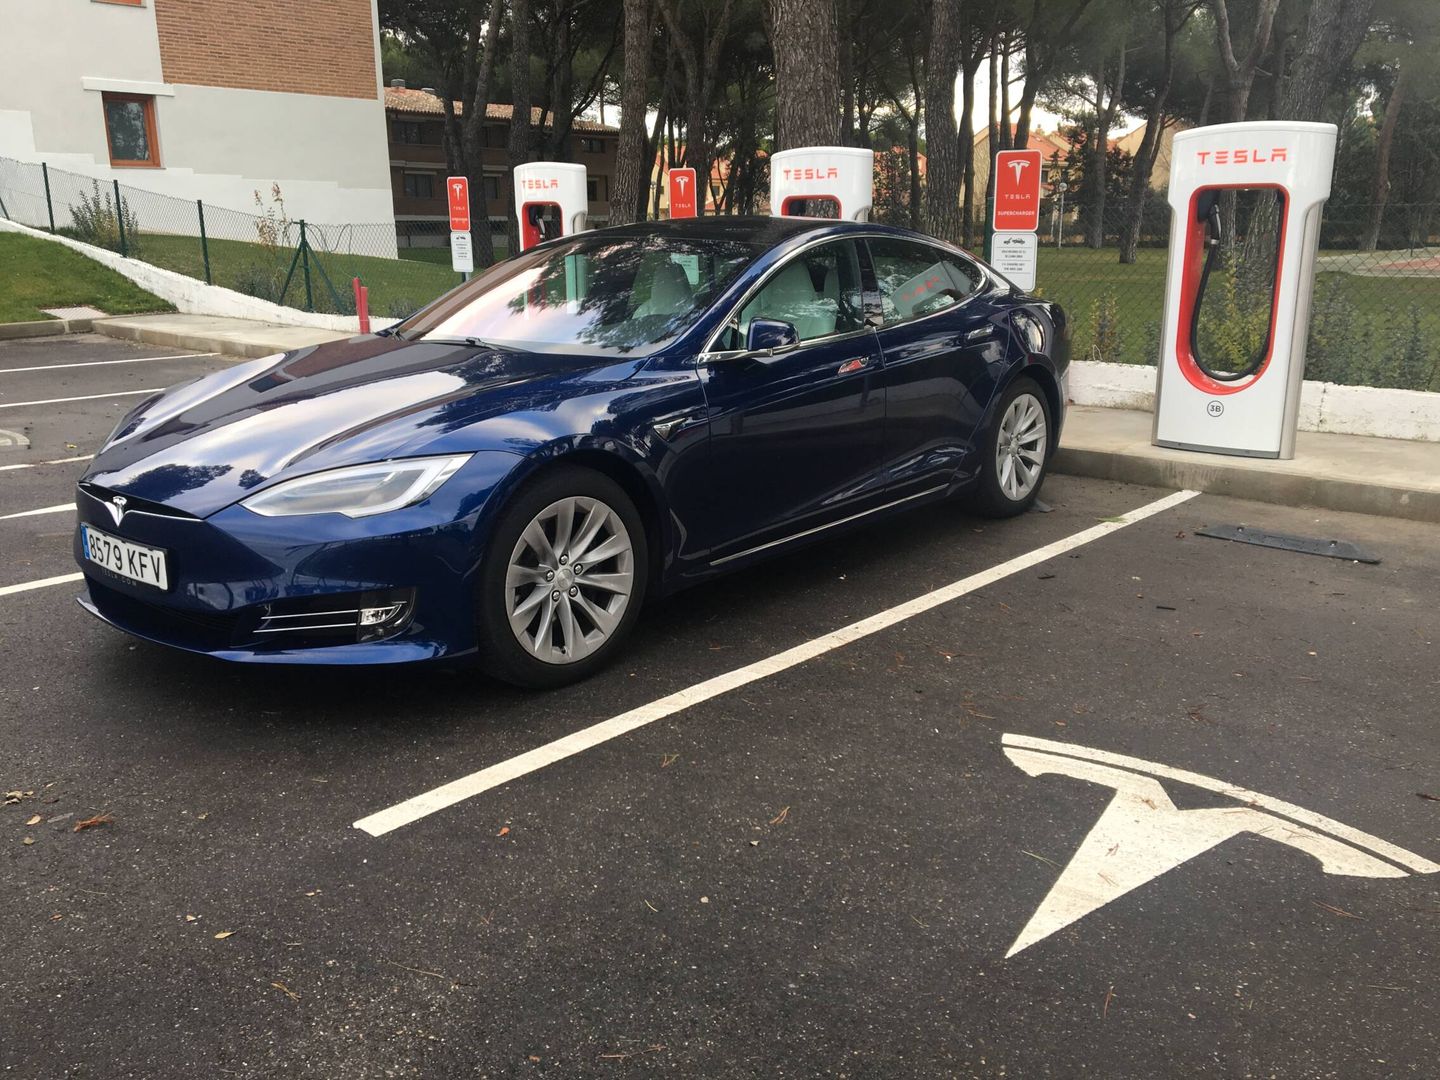 Un Tesla Model S en la estación Supercharger de Tesla en Tordesillas.